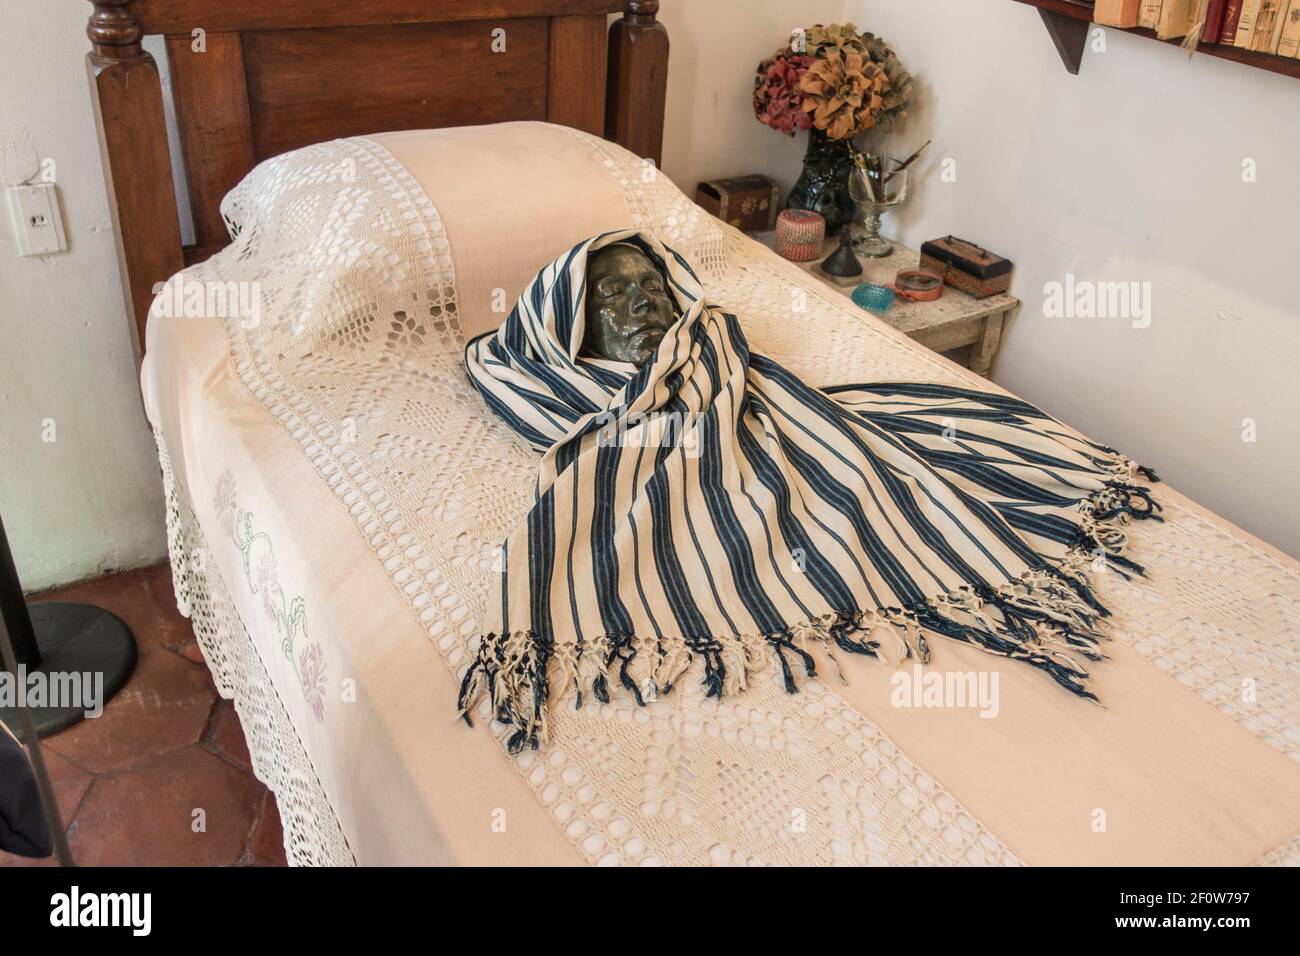 Le masque de la mort de Frida Kahlo sur son lit dans la Casa Azul (Maison Bleue) Coyoacan, Mexico, Mexique Banque D'Images